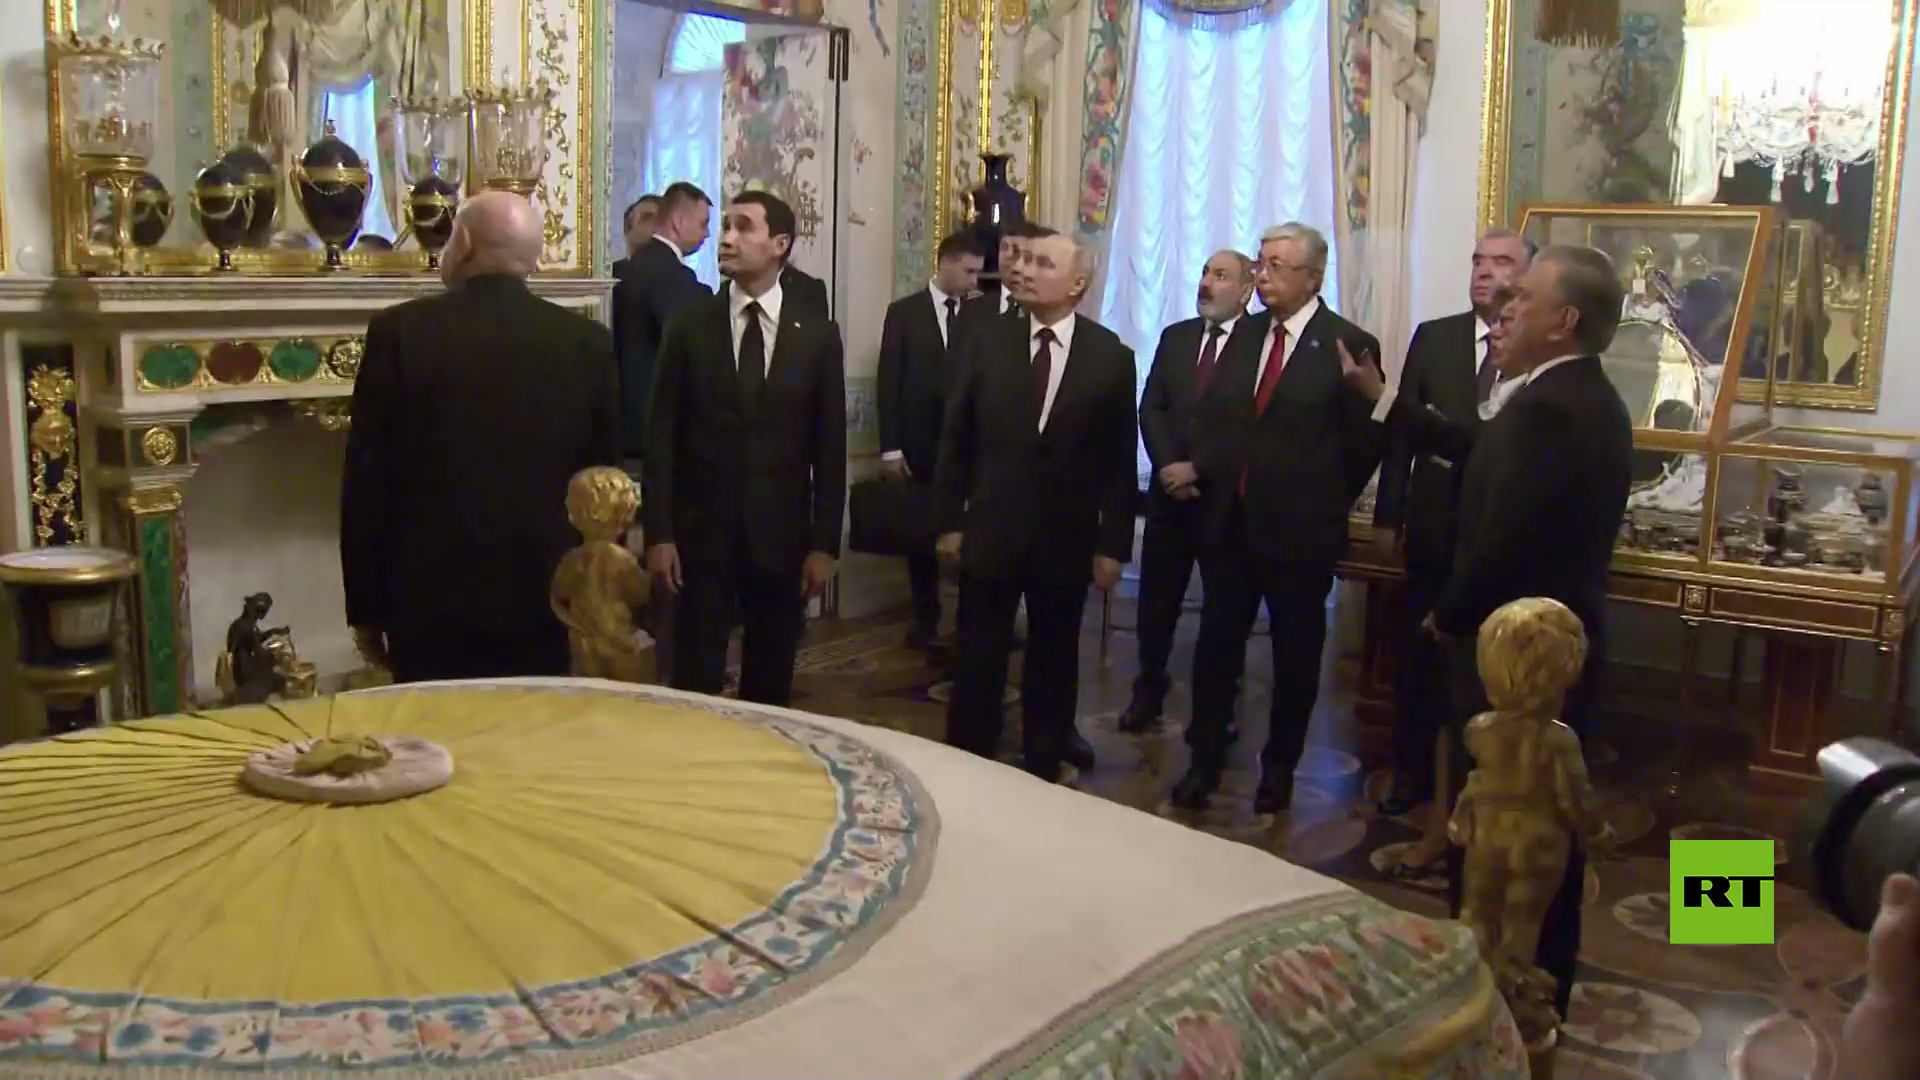 بالفيديو.. جولة في متحف محمية بافلوفسك للرئيس بوتين وزعماء رابطة الدول المستقلة